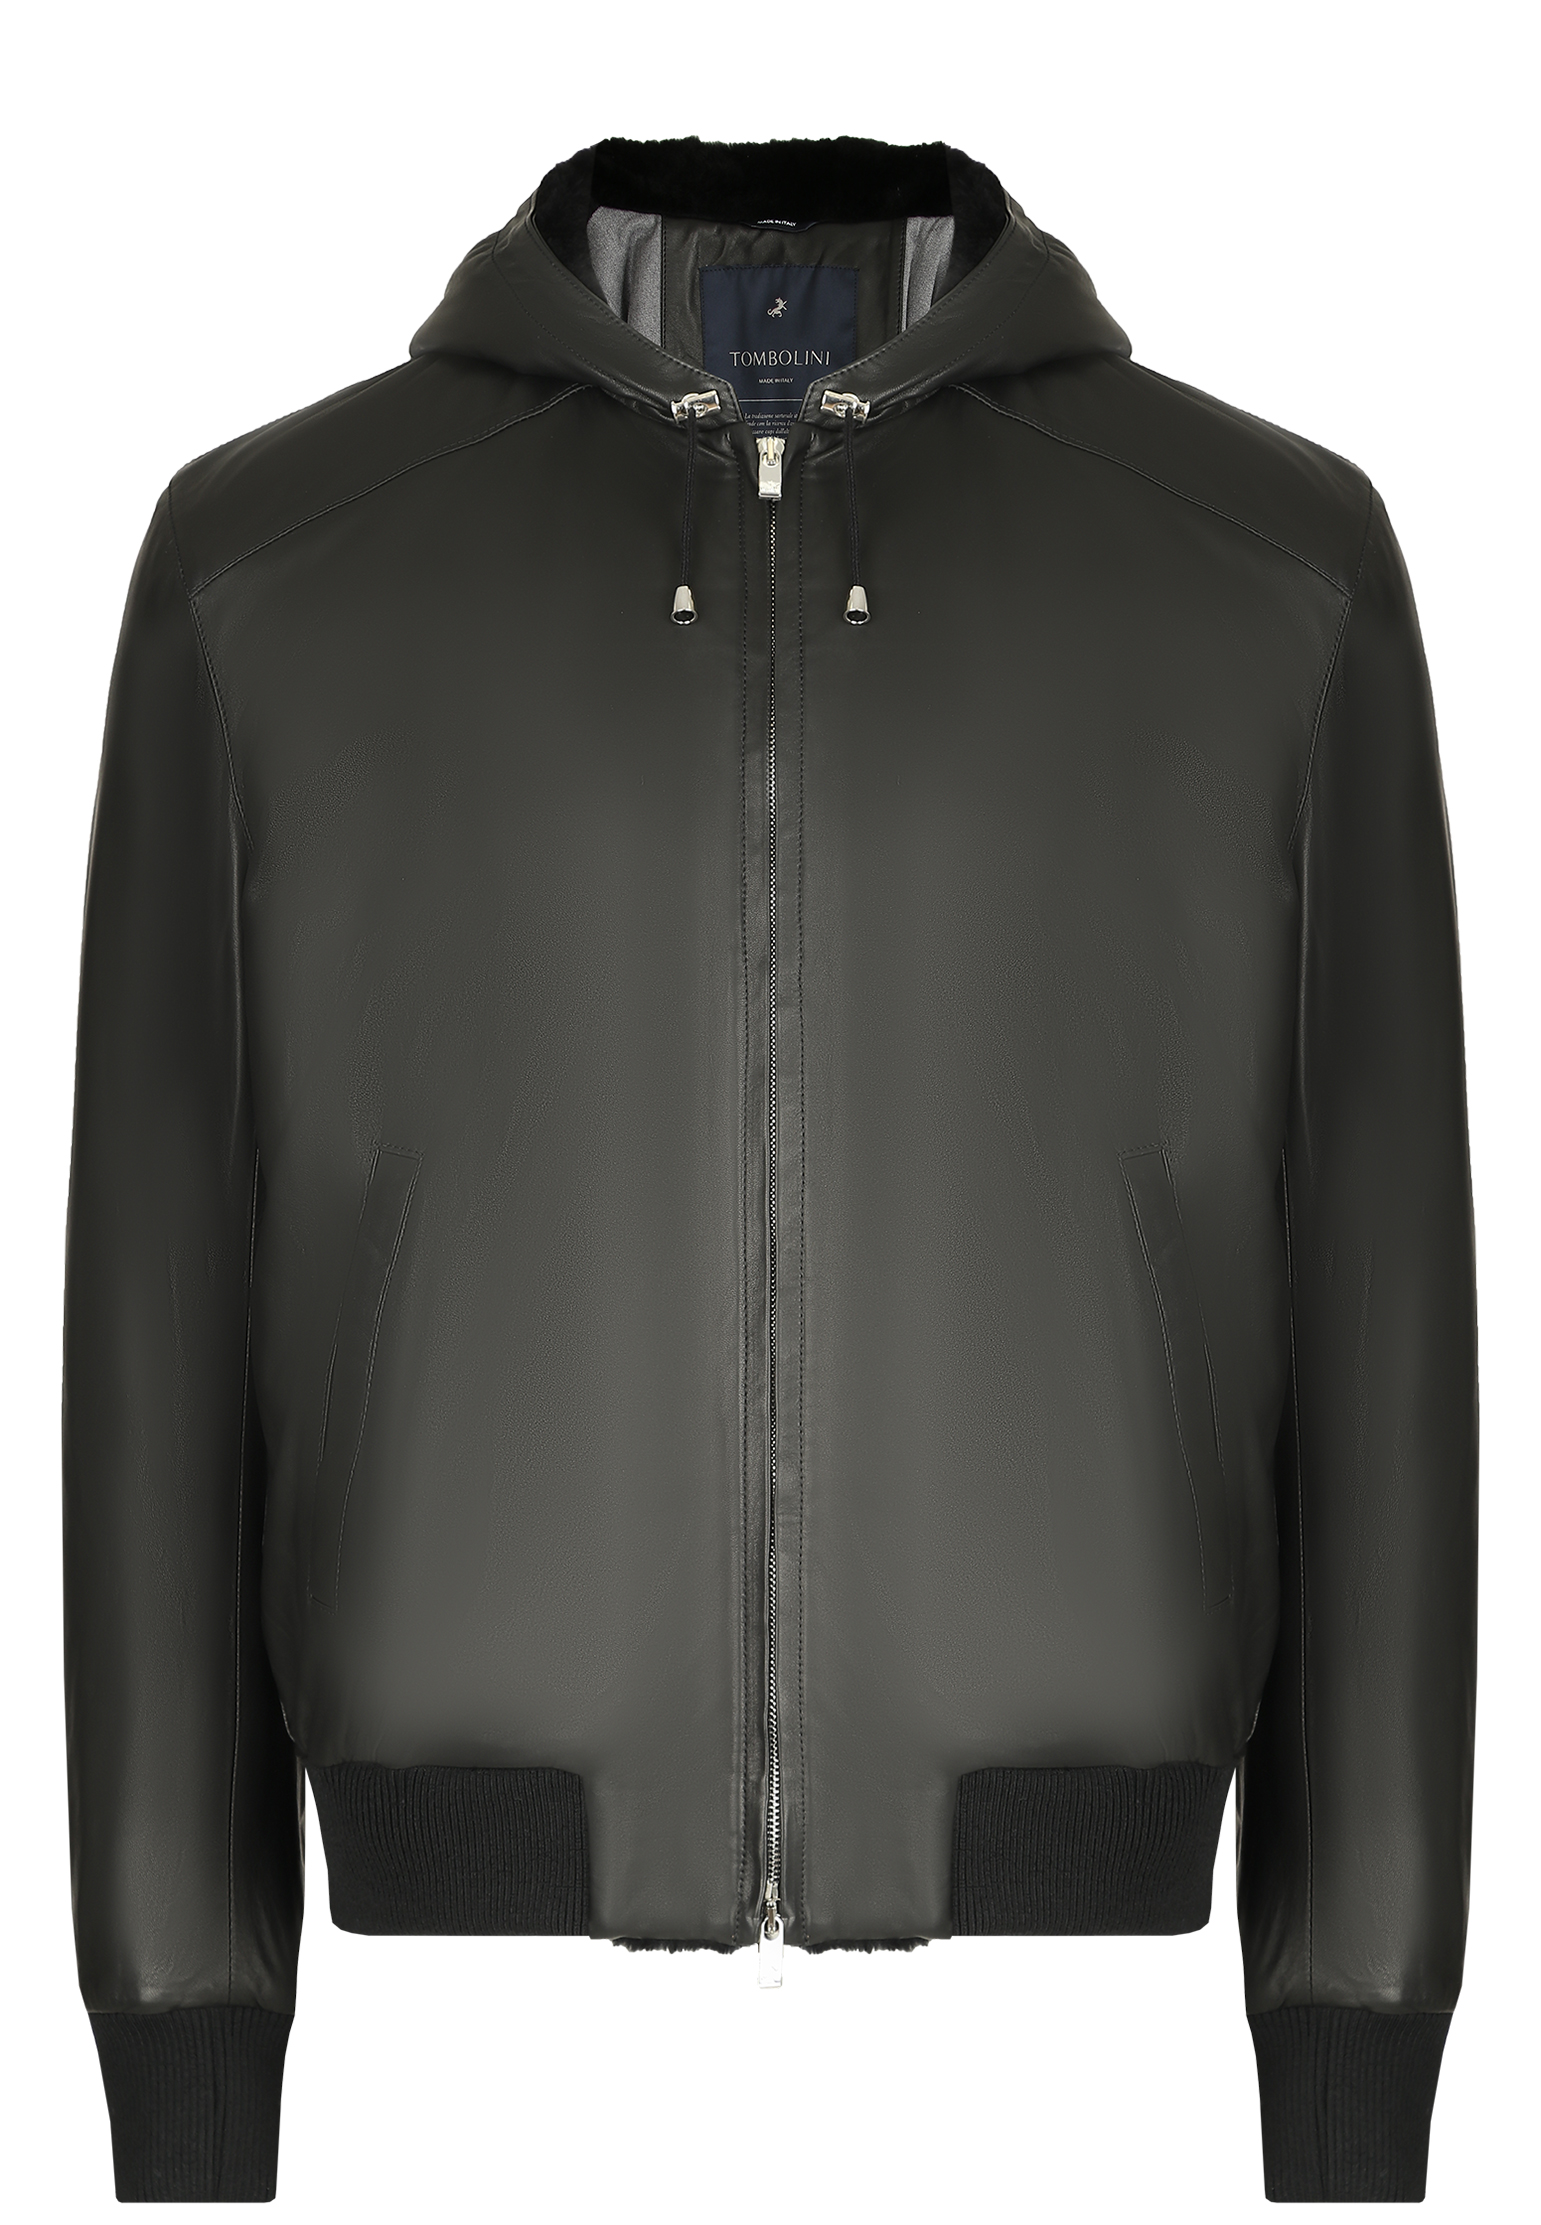 Куртка TOMBOLINI Черный, размер 52